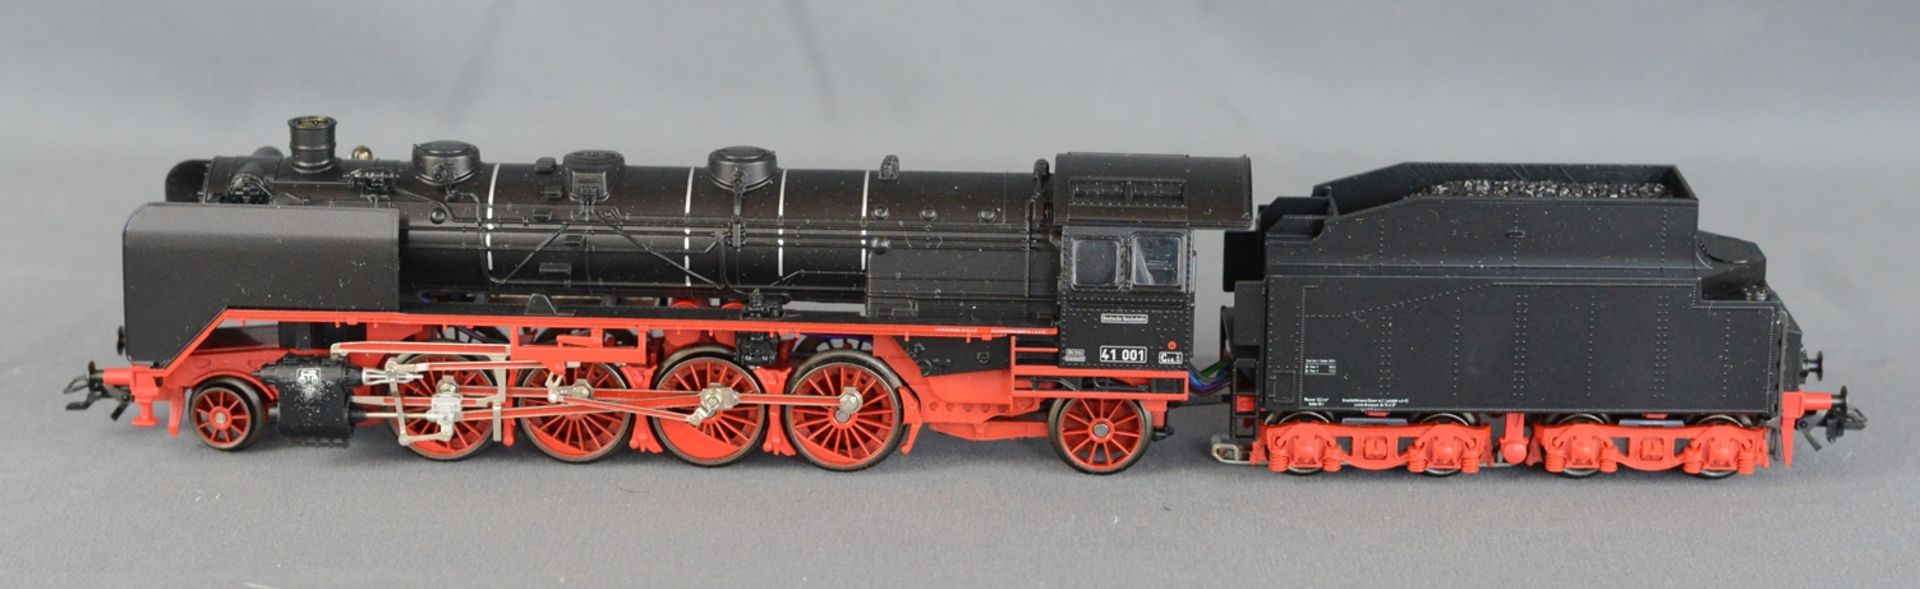 Märklin Artikel Delta 2995 Jubiläumspackung "60 Jahre H0", bestehend aus einer Güterzuglokomotive - Image 3 of 7